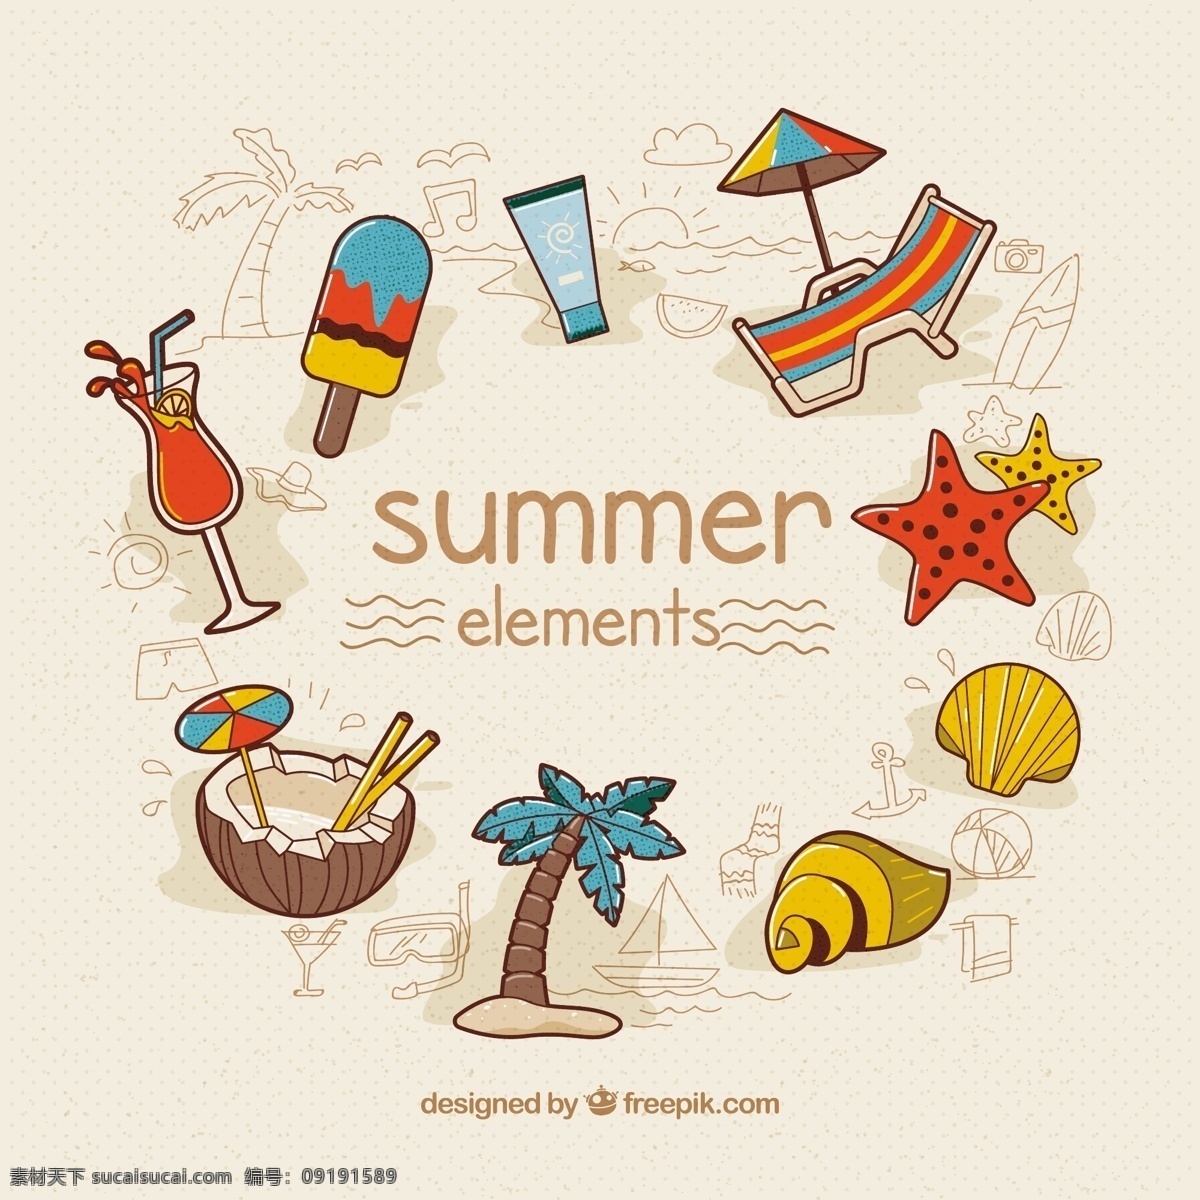 手绘 夏季 元素 集合 树 夏天 一方面 阳光 海滩 喝 船 鸡尾酒 度假 伞 棕榈树 棕榈 椰子 壳 夏日海滩 冰淇淋 元 潜水 白色